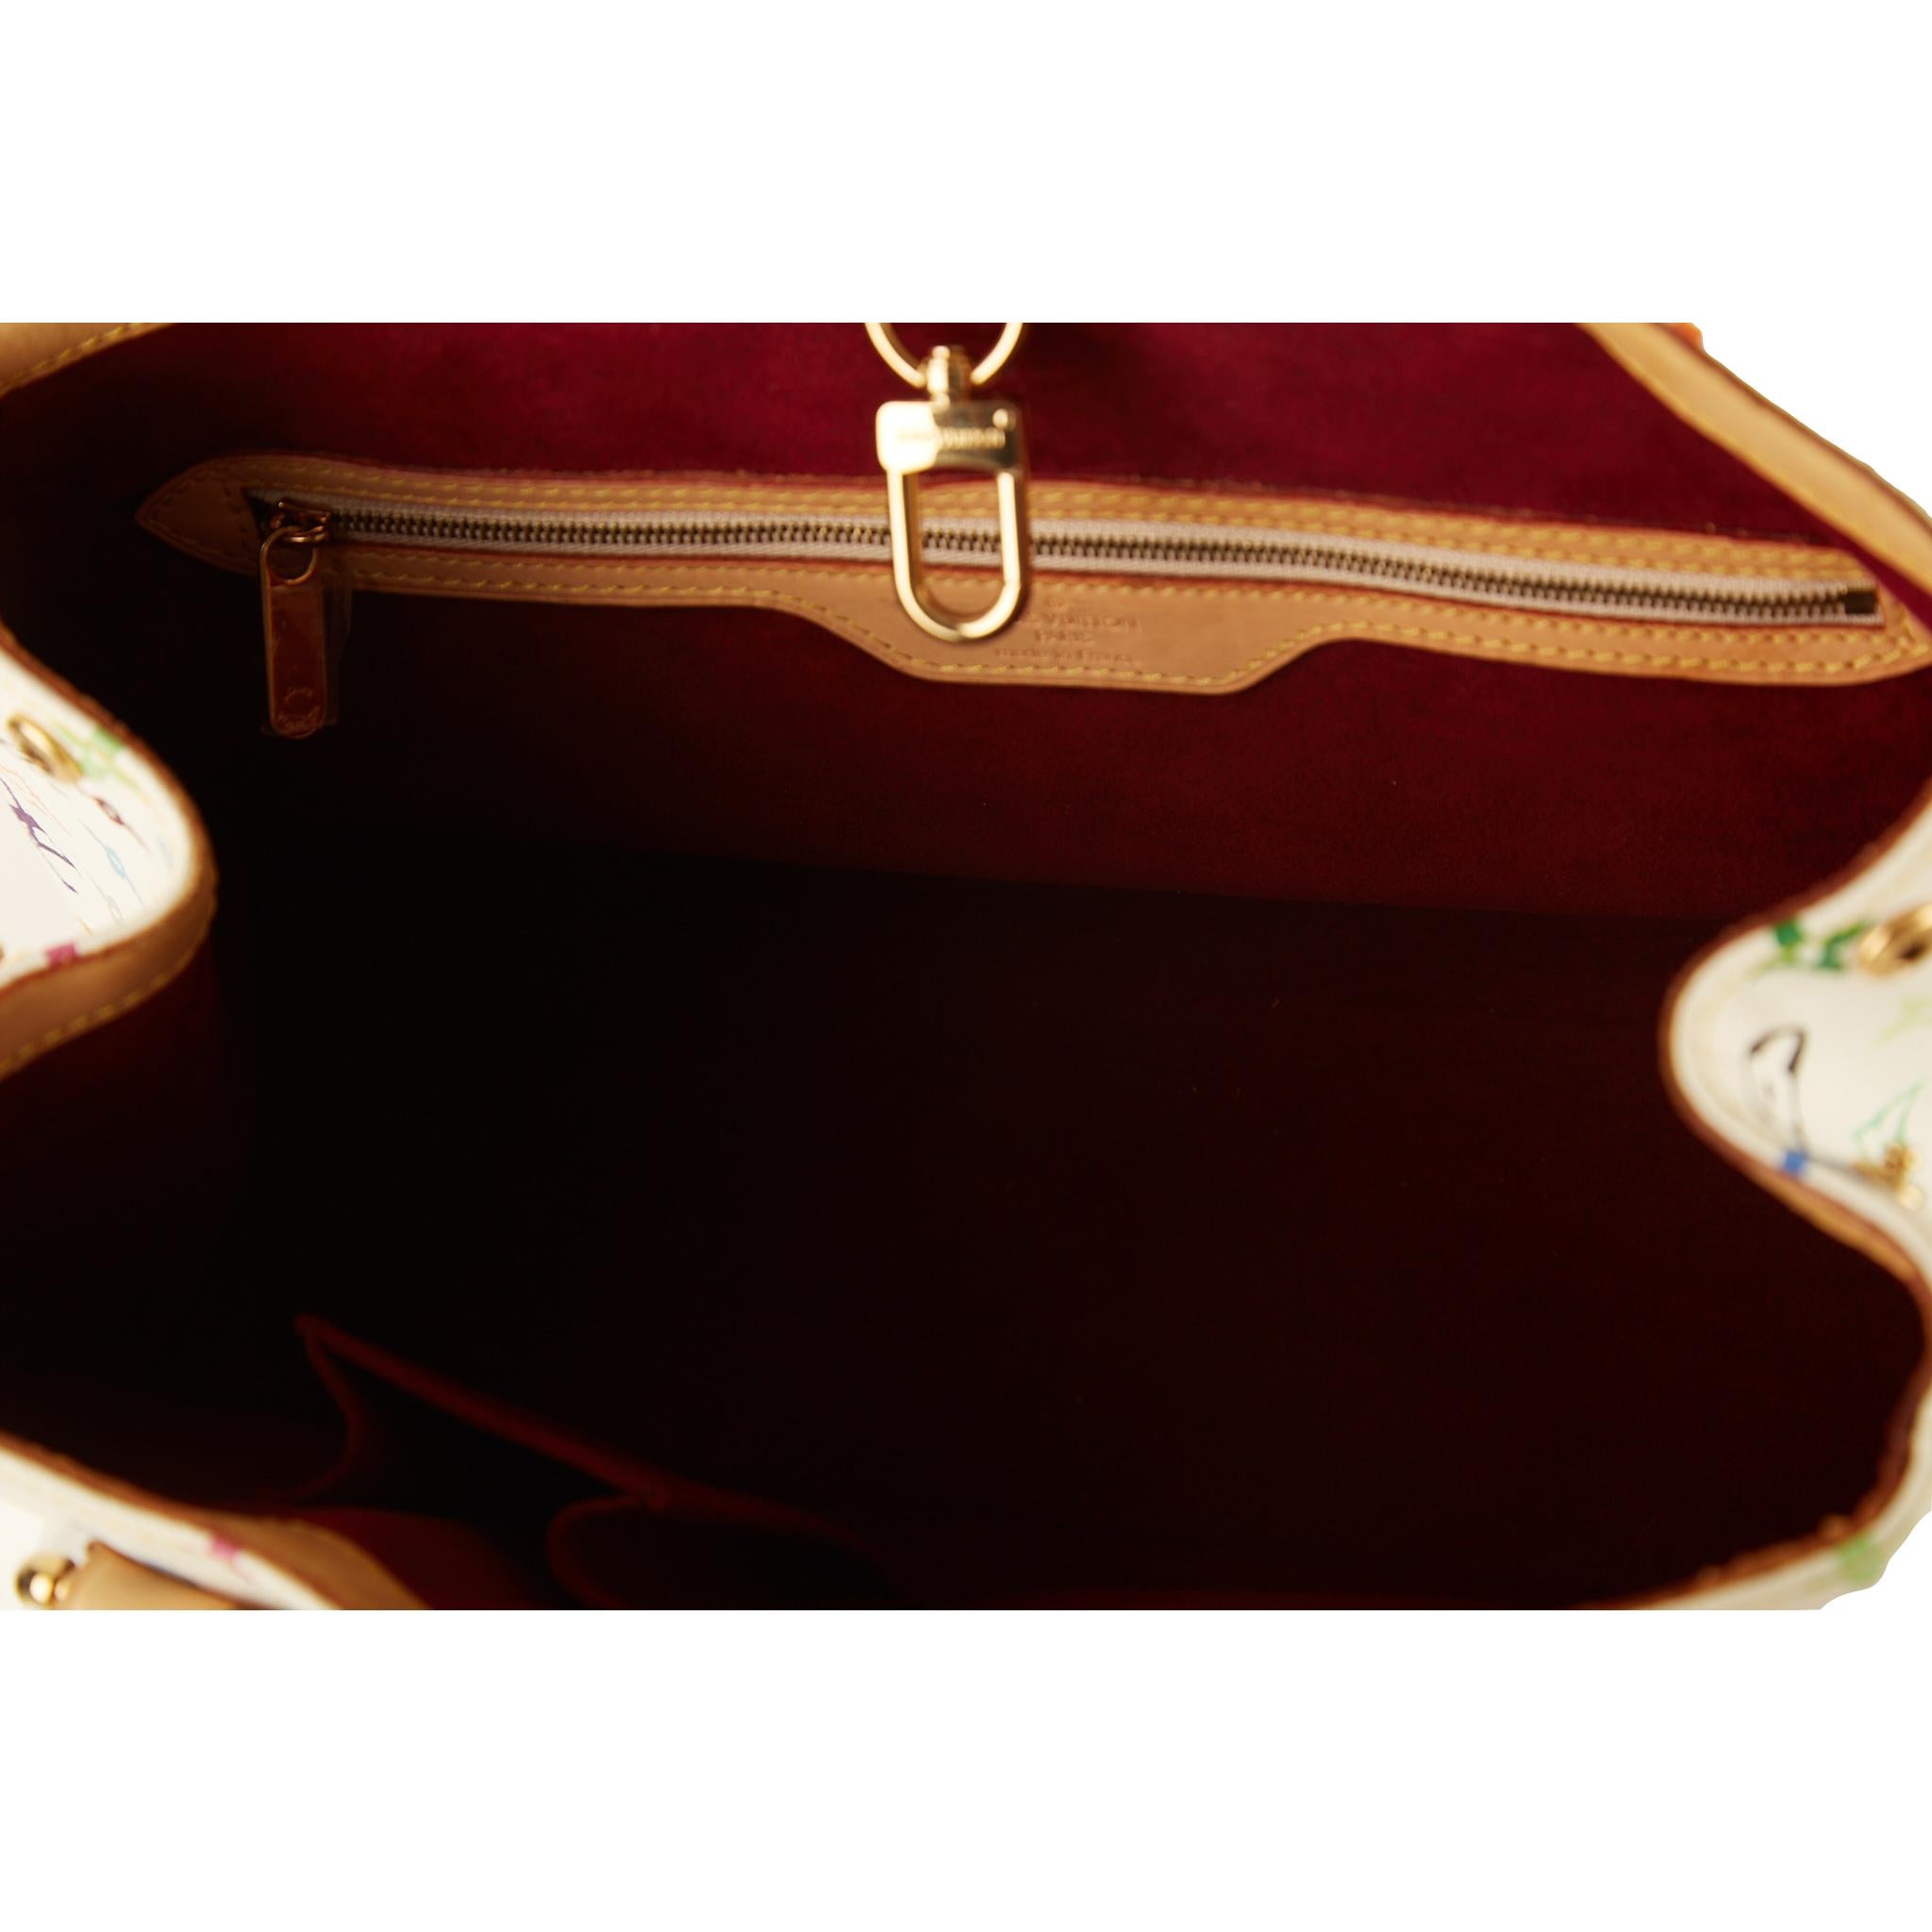 vuitton multicolor aurelia handbag